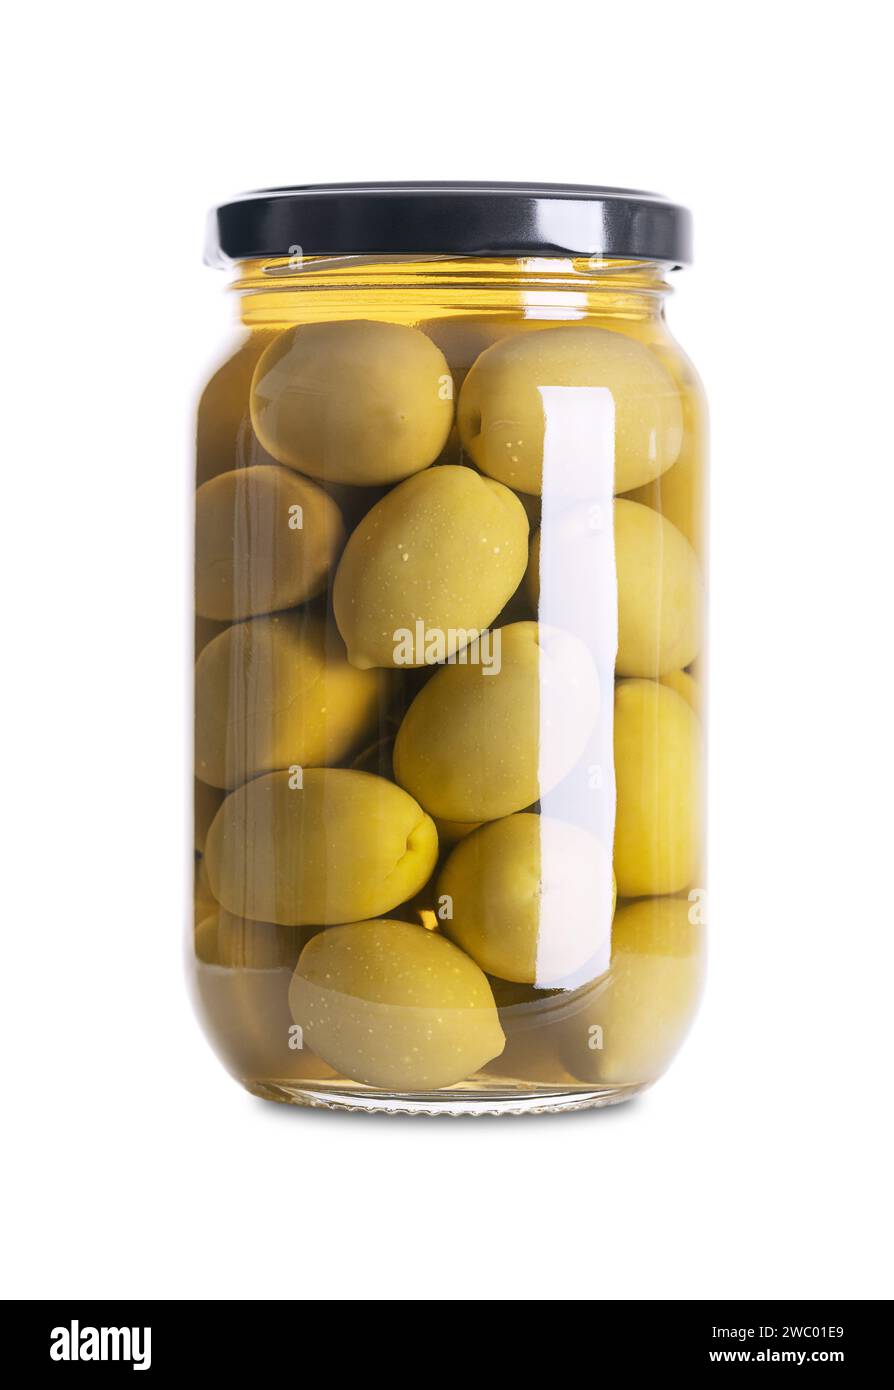 Olives vertes avec fosse, marinées entières, grandes olives de table grecques, dans un bocal en verre avec bouchon à vis. Fruits entiers, cueillis quand ils ne sont pas encore mûrs. Banque D'Images